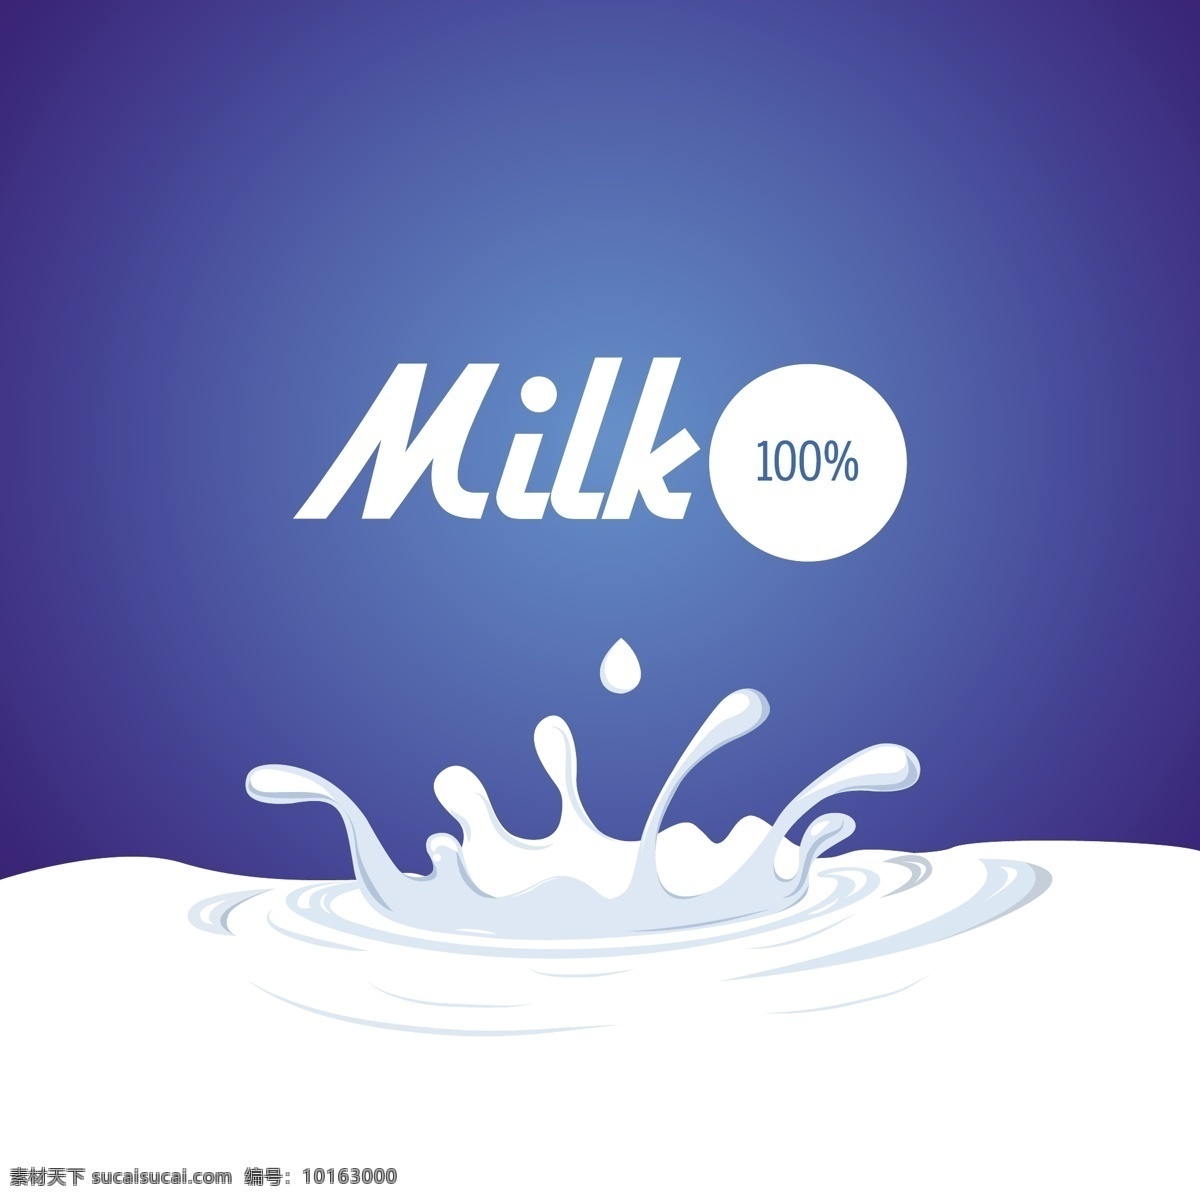 牛奶广告素材 牛奶 鲜奶 广告素材 酸奶 矢量素材 milk